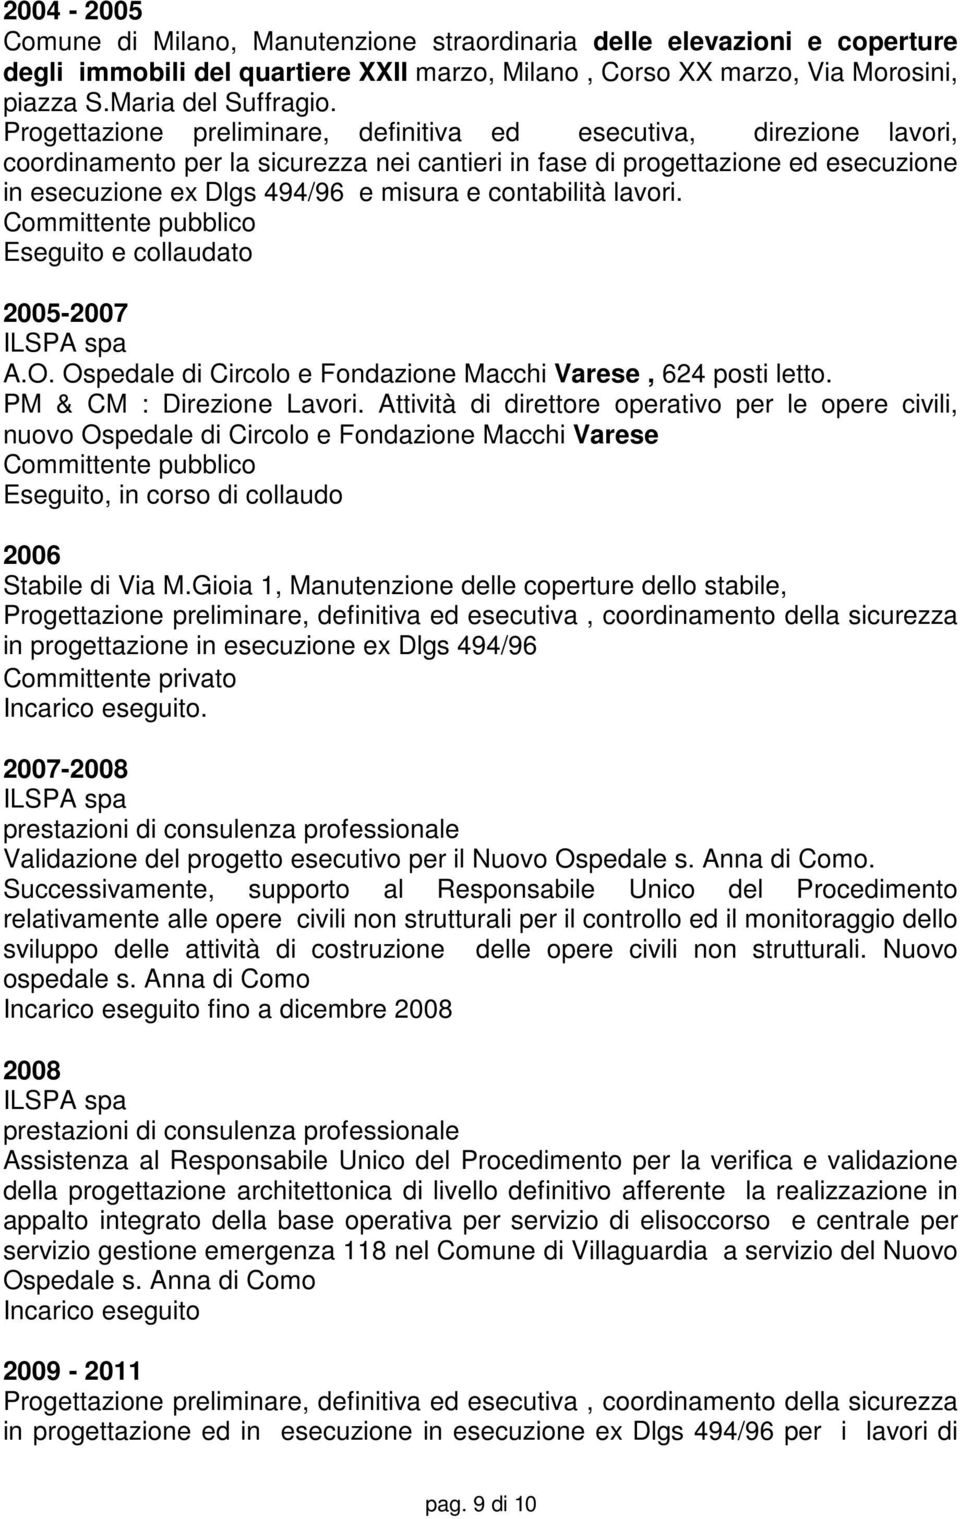 contabilità lavori. Committente pubblico 2005-2007 ILSPA spa A.O. Ospedale di Circolo e Fondazione Macchi Varese, 624 posti letto. PM & CM : Direzione Lavori.